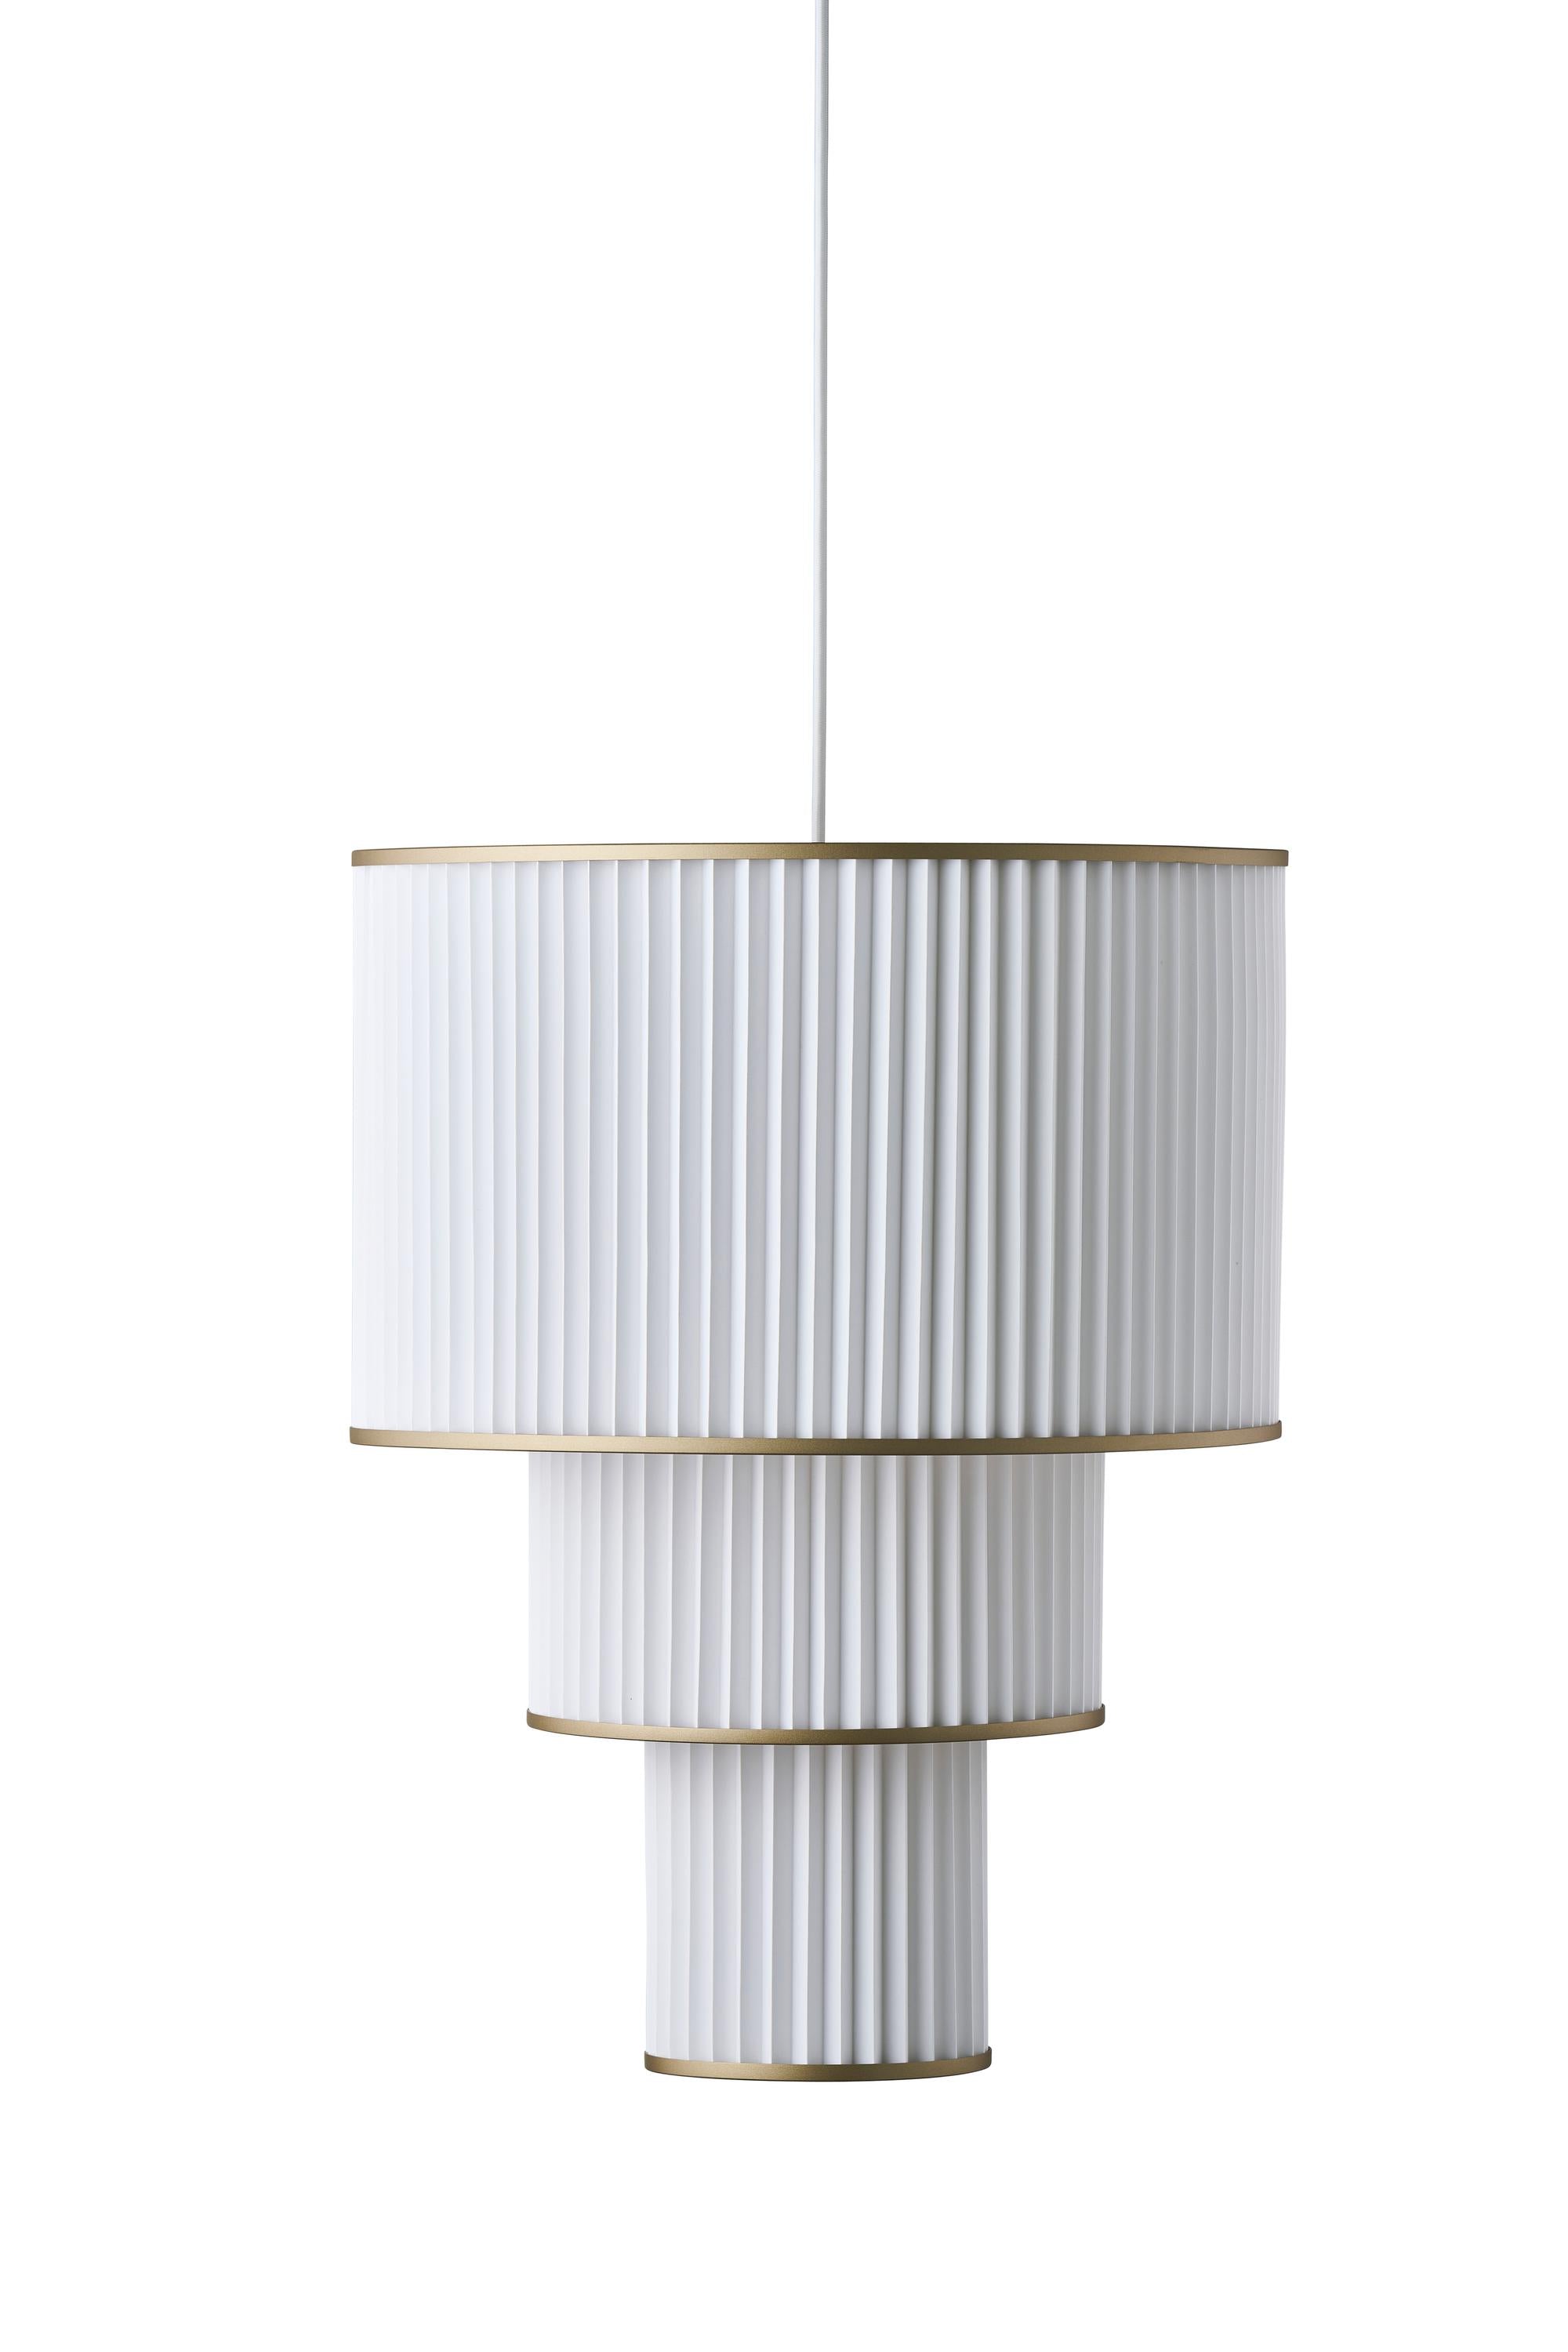 Le Klint Plivello Suspension Lamp Golden/White With 3 Shades (S M L)